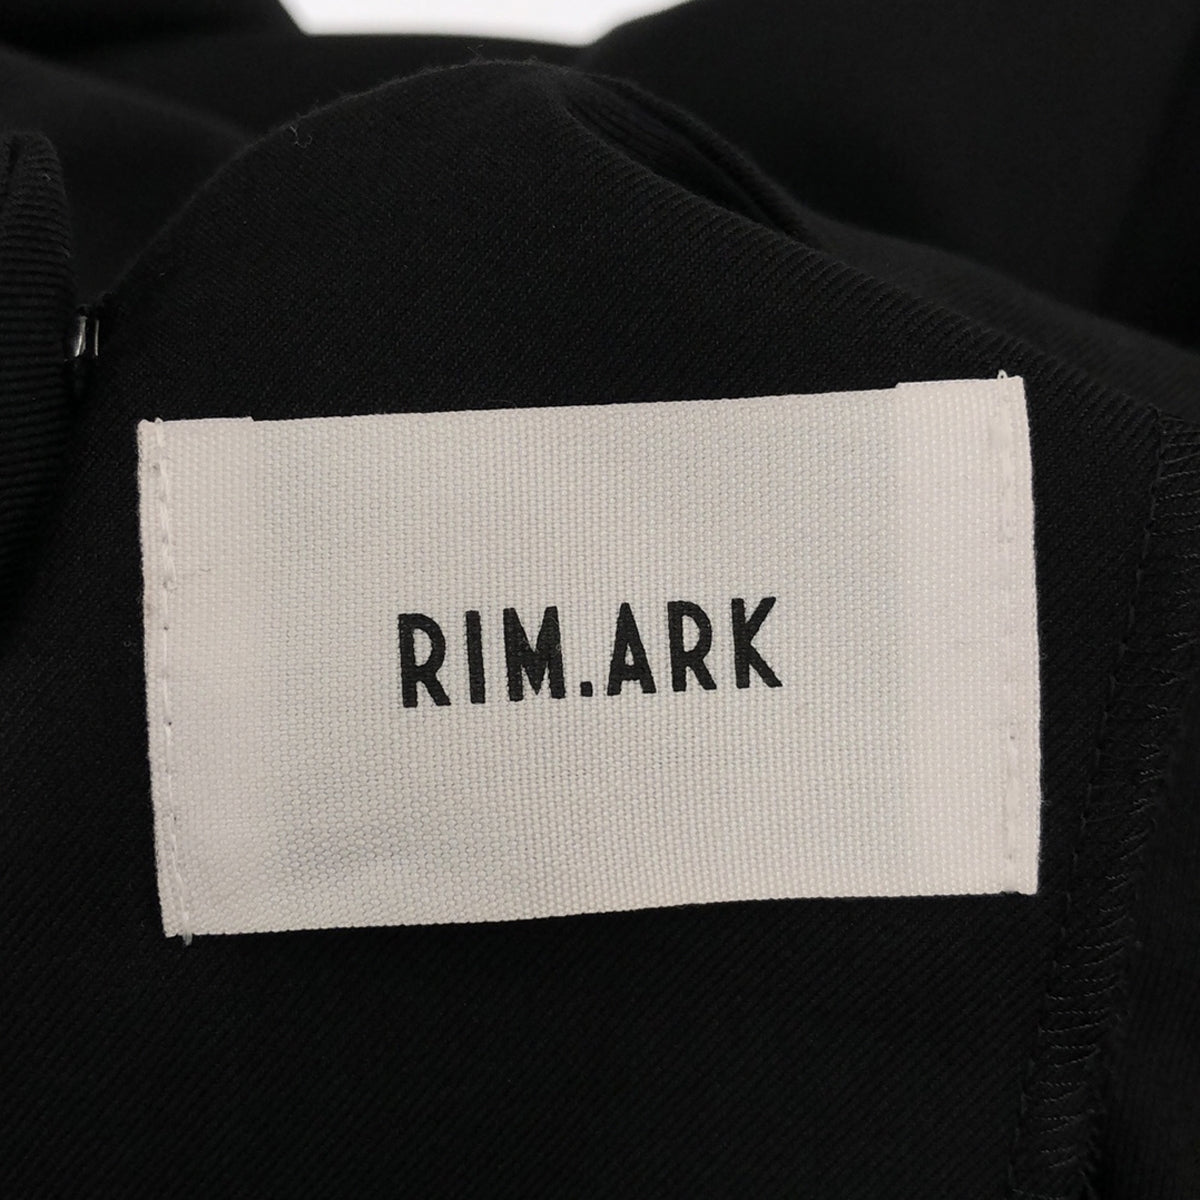 RIM.ARK / リムアーク | バック スクエアオープン ワンピース | 36 | ブラック | レディース